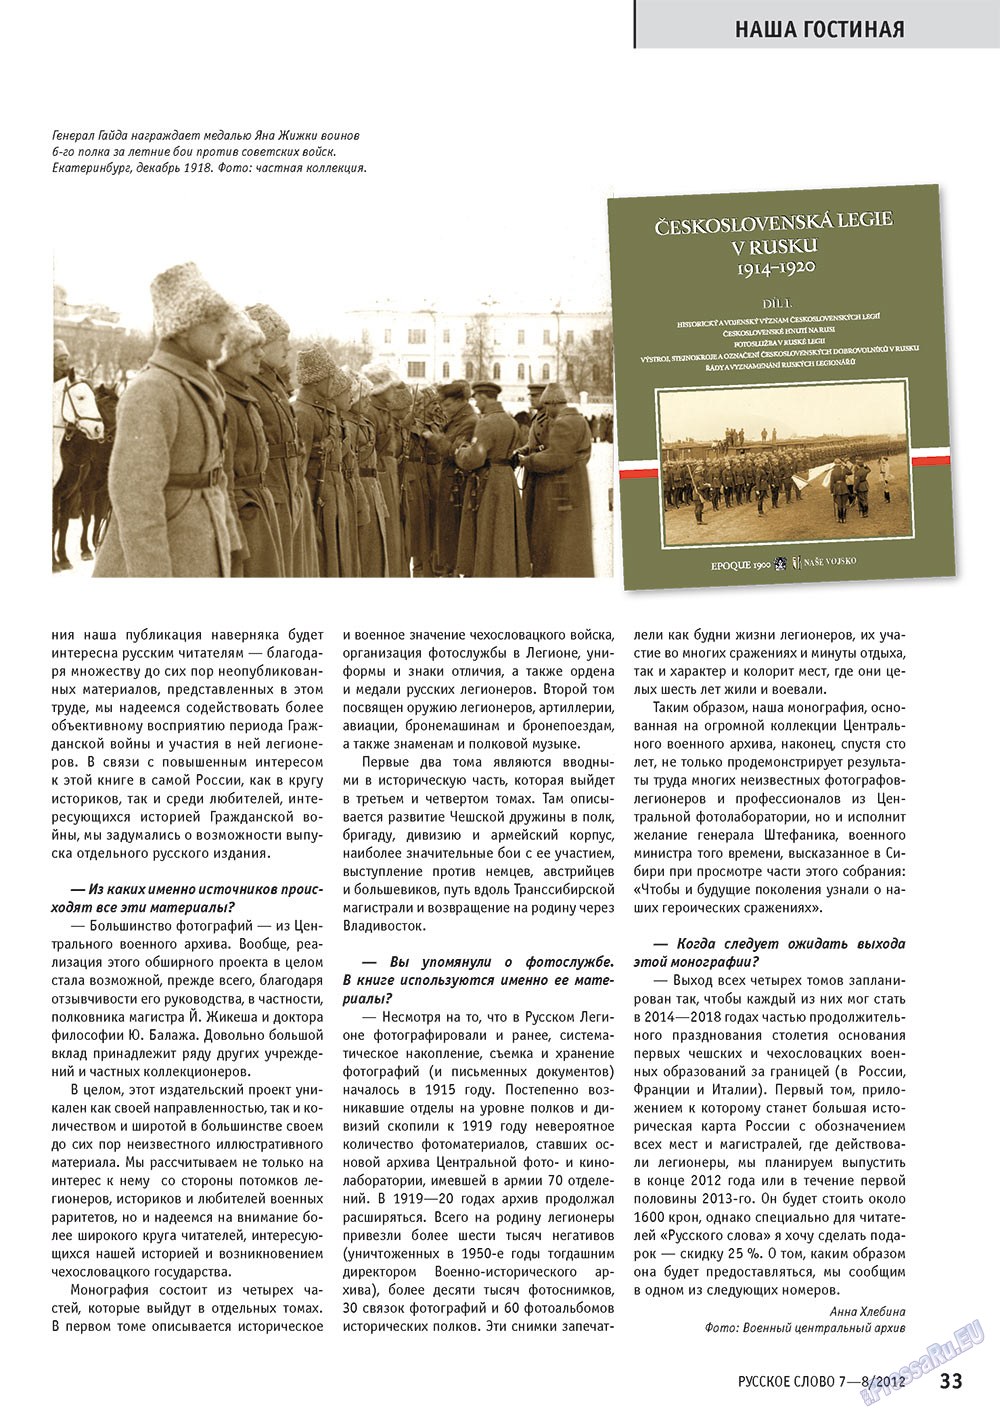 Русское слово, журнал. 2012 №7 стр.33